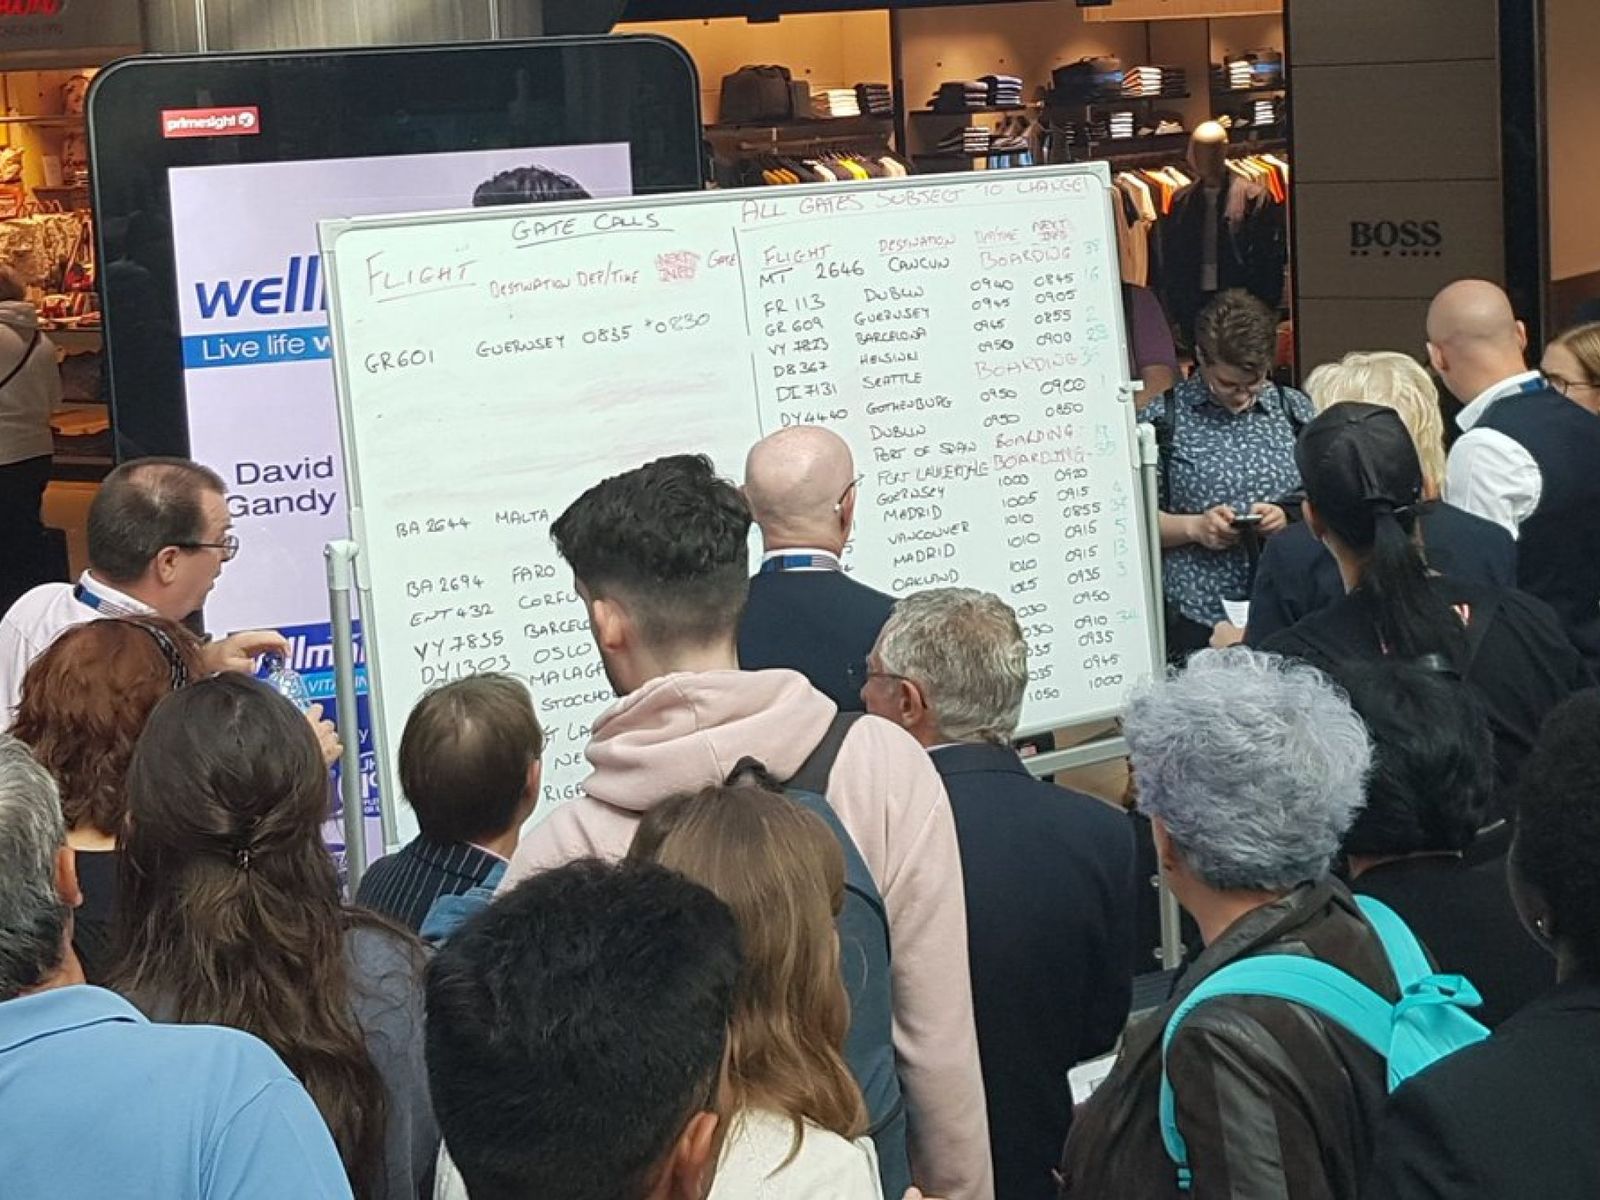 Caos en el aeropuerto de Gatwick en Reino Unido por un fallo en las pantallas de información